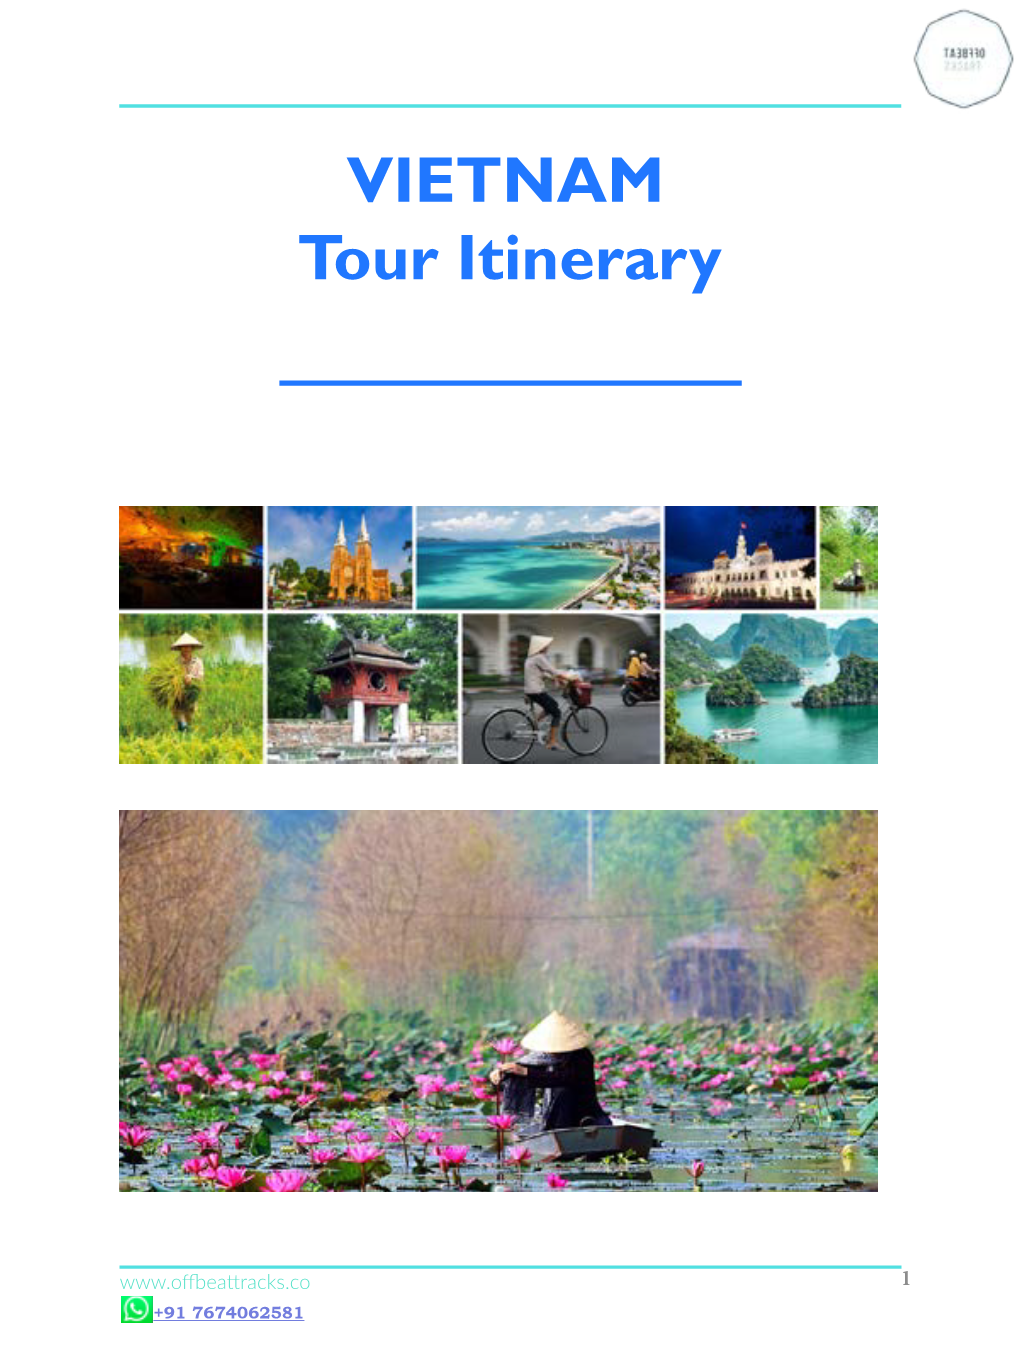 VIETNAM Tour Itinerary